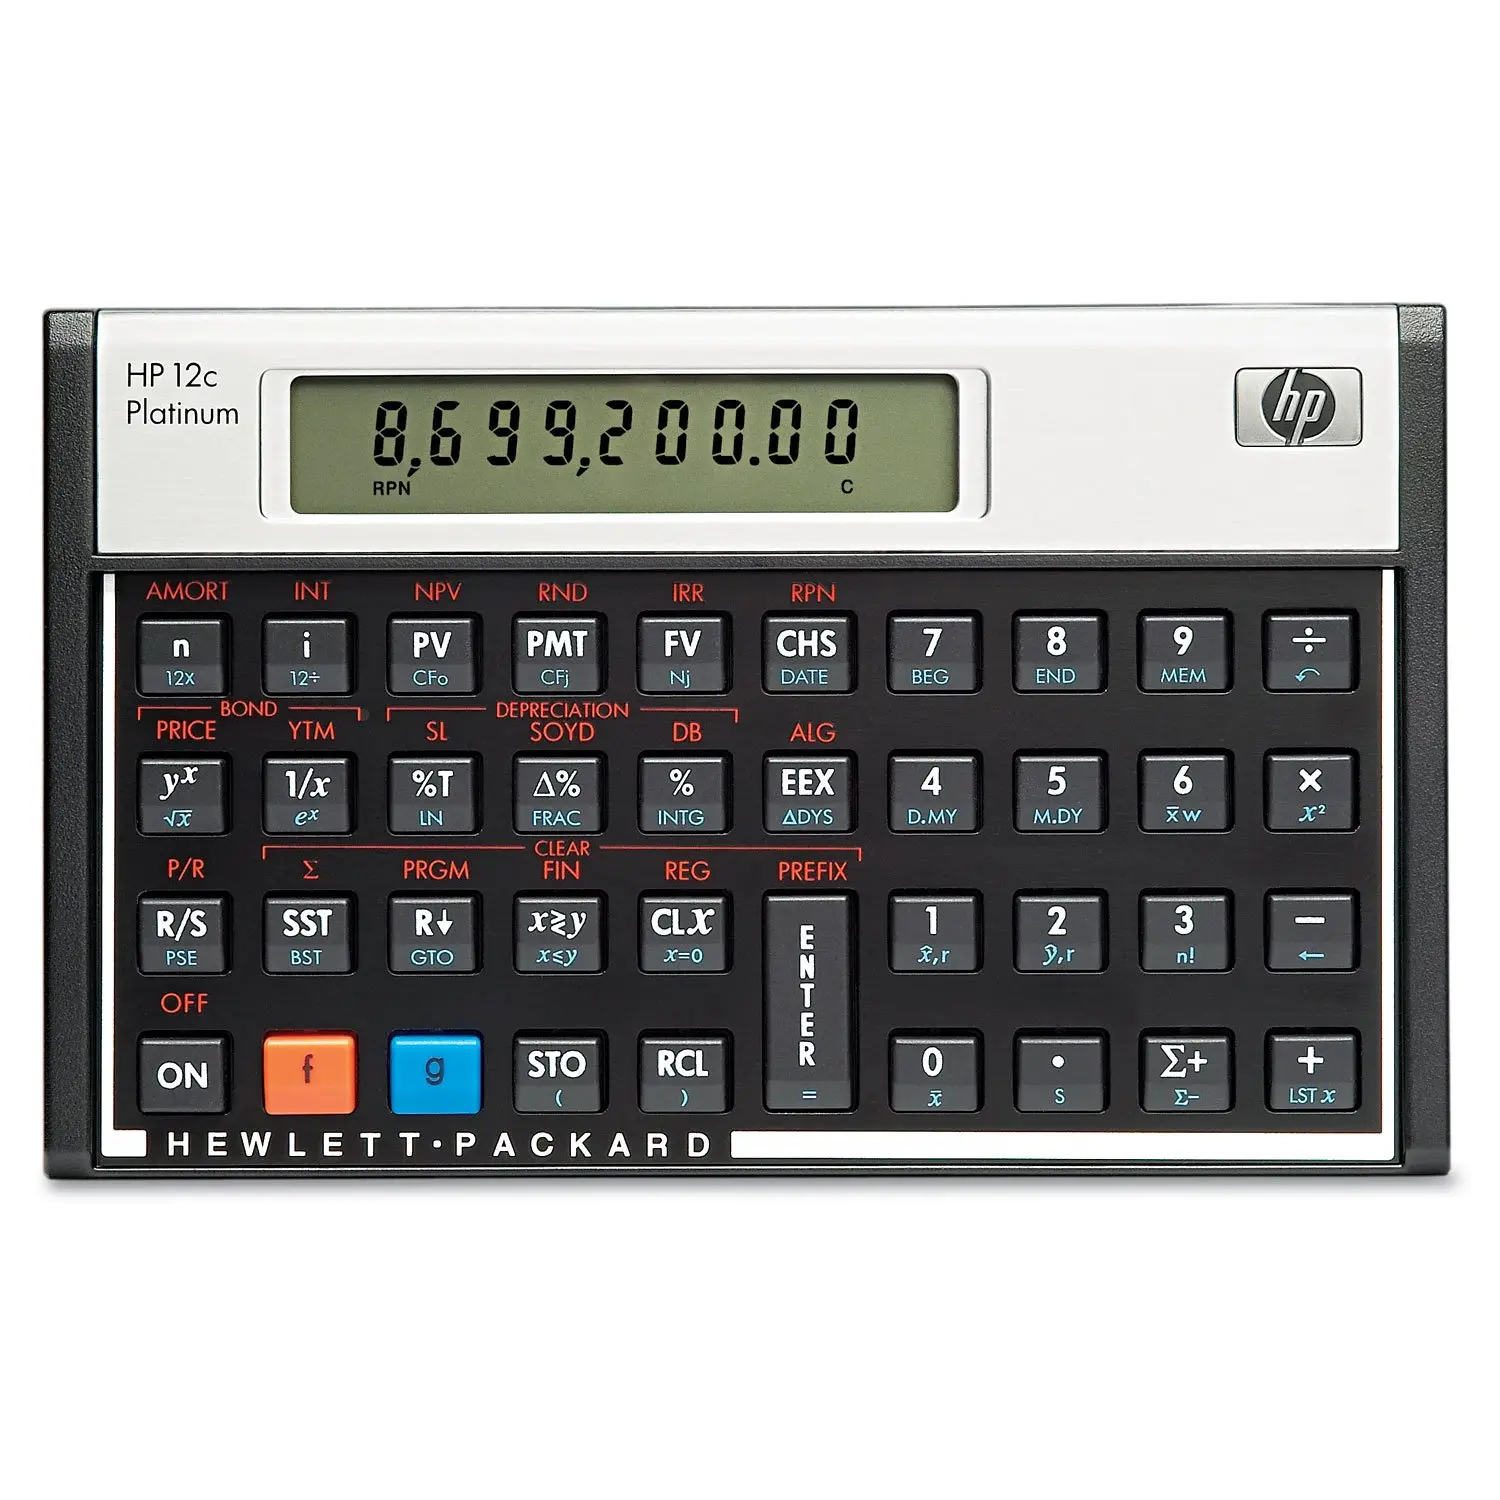 Hewlett packard 12c platinum financial calculator: a comprehensive review